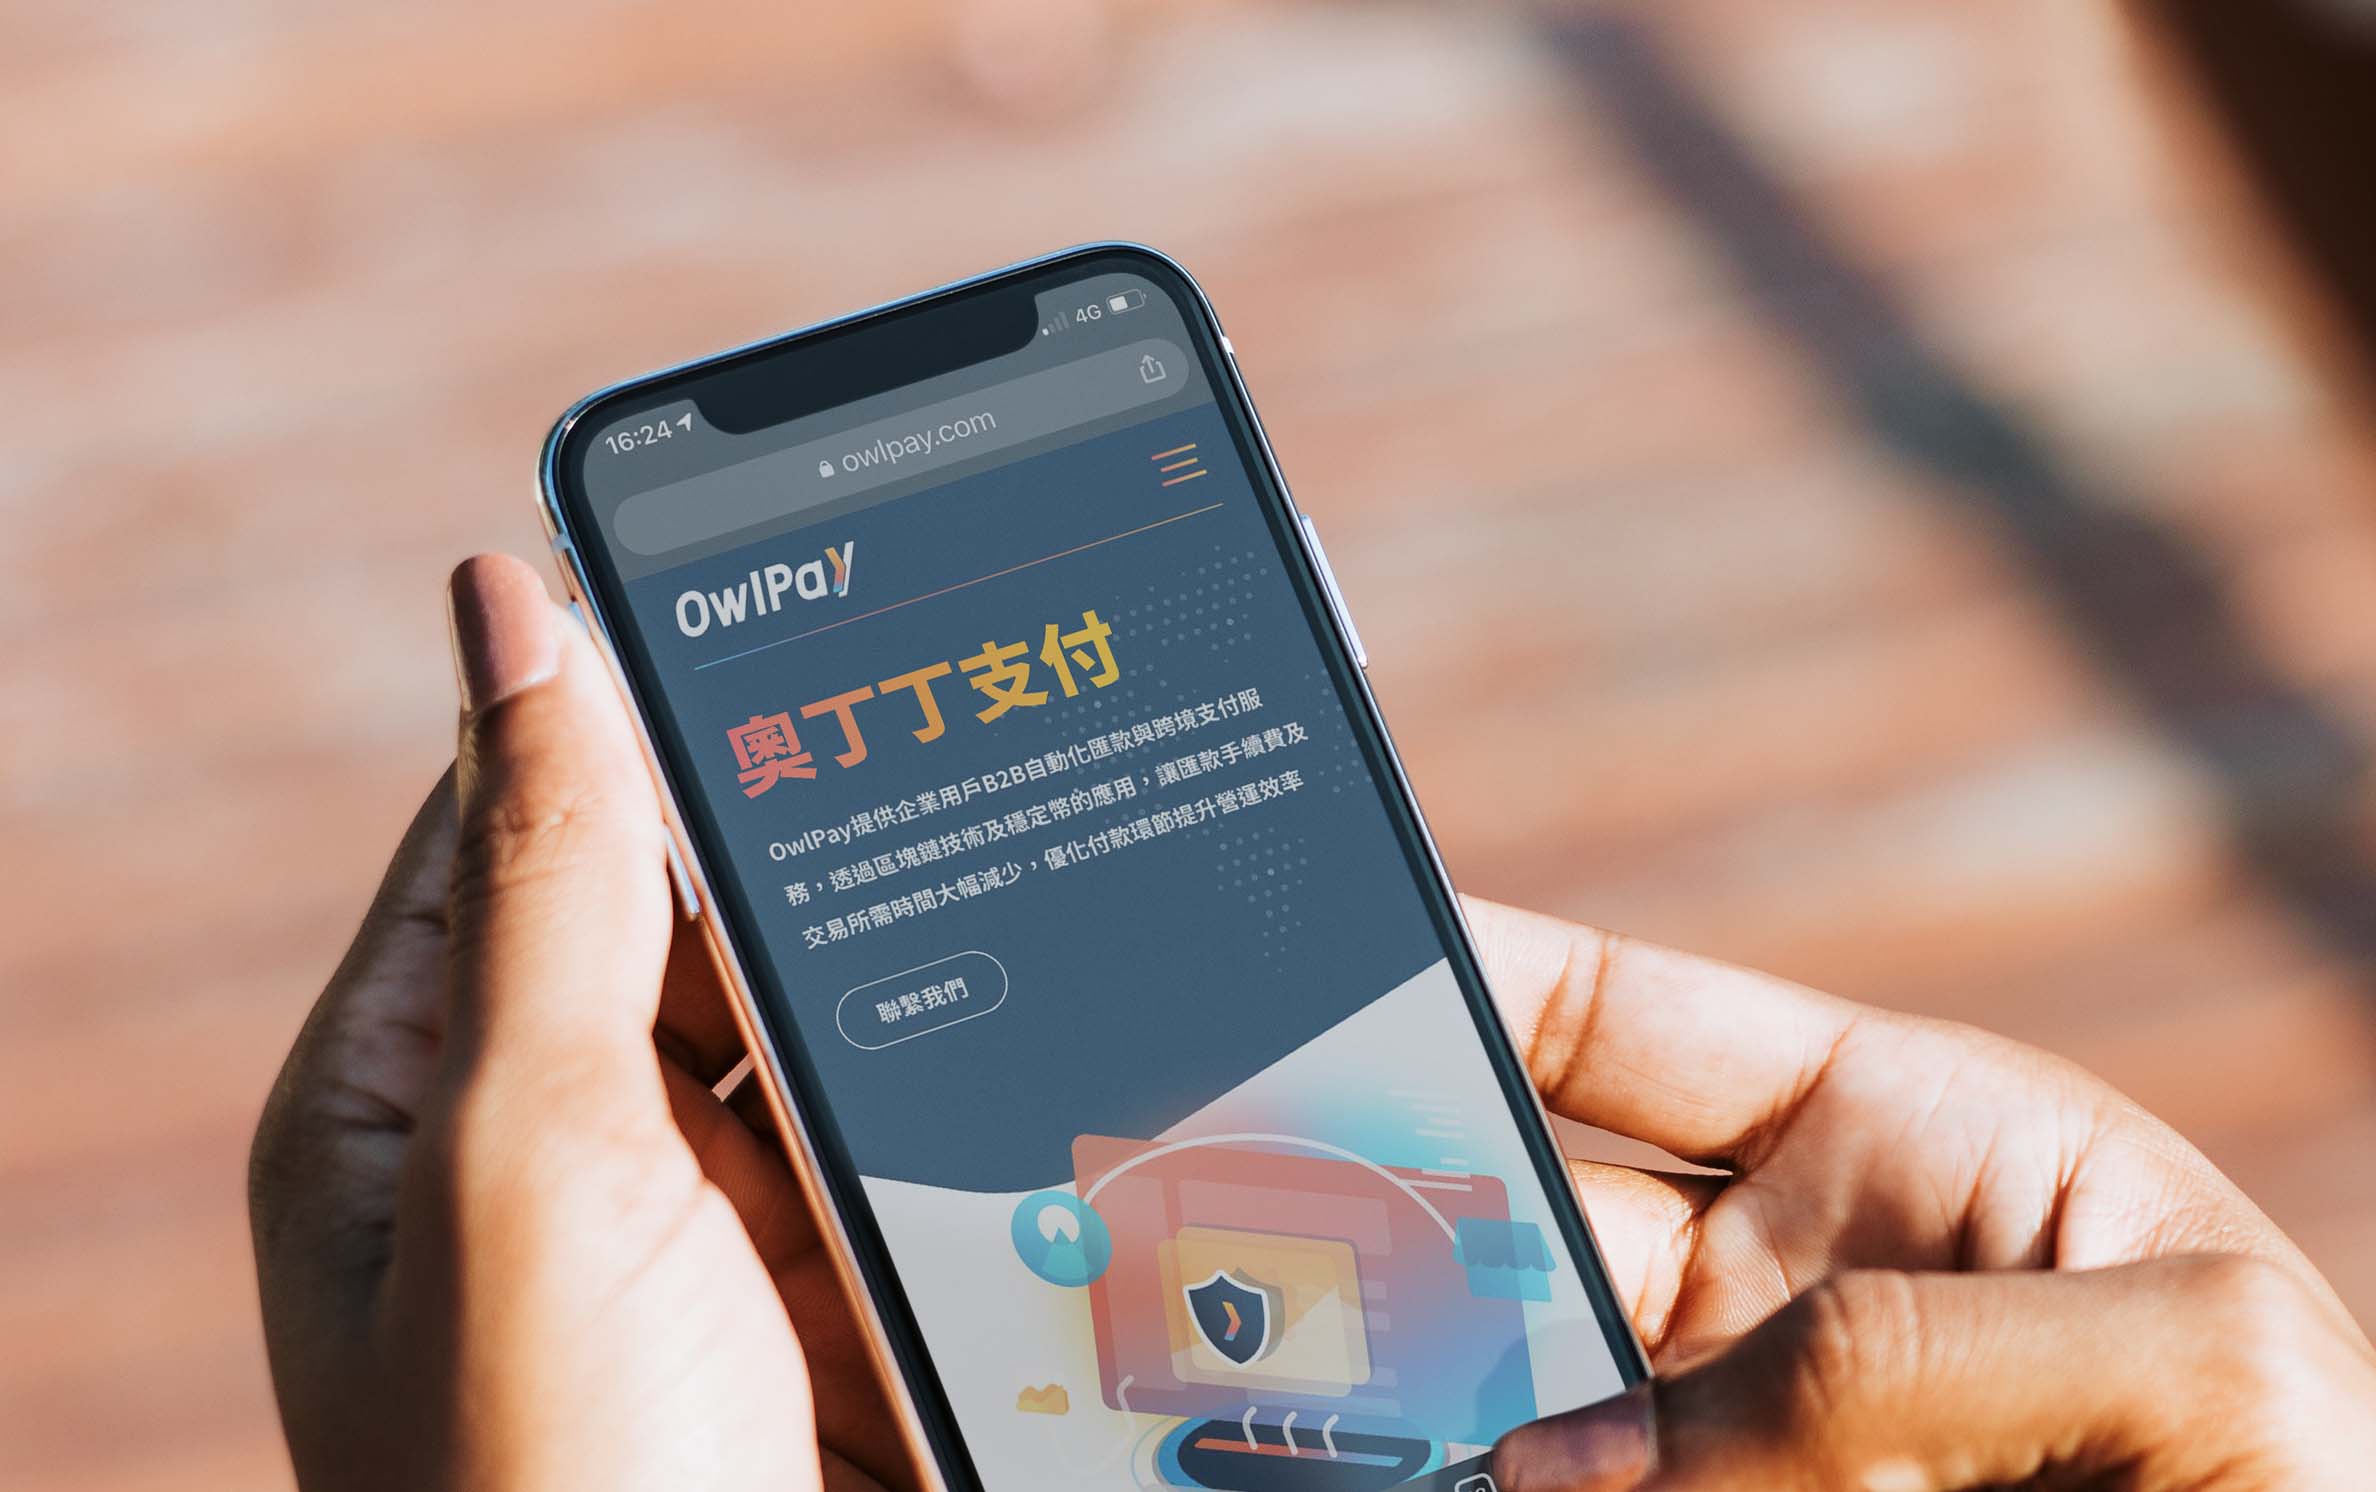 奧丁丁集團推出全新FinTech服務—奧丁丁支付 OwlPay，攜手國泰世華銀行推動數位金融再升級